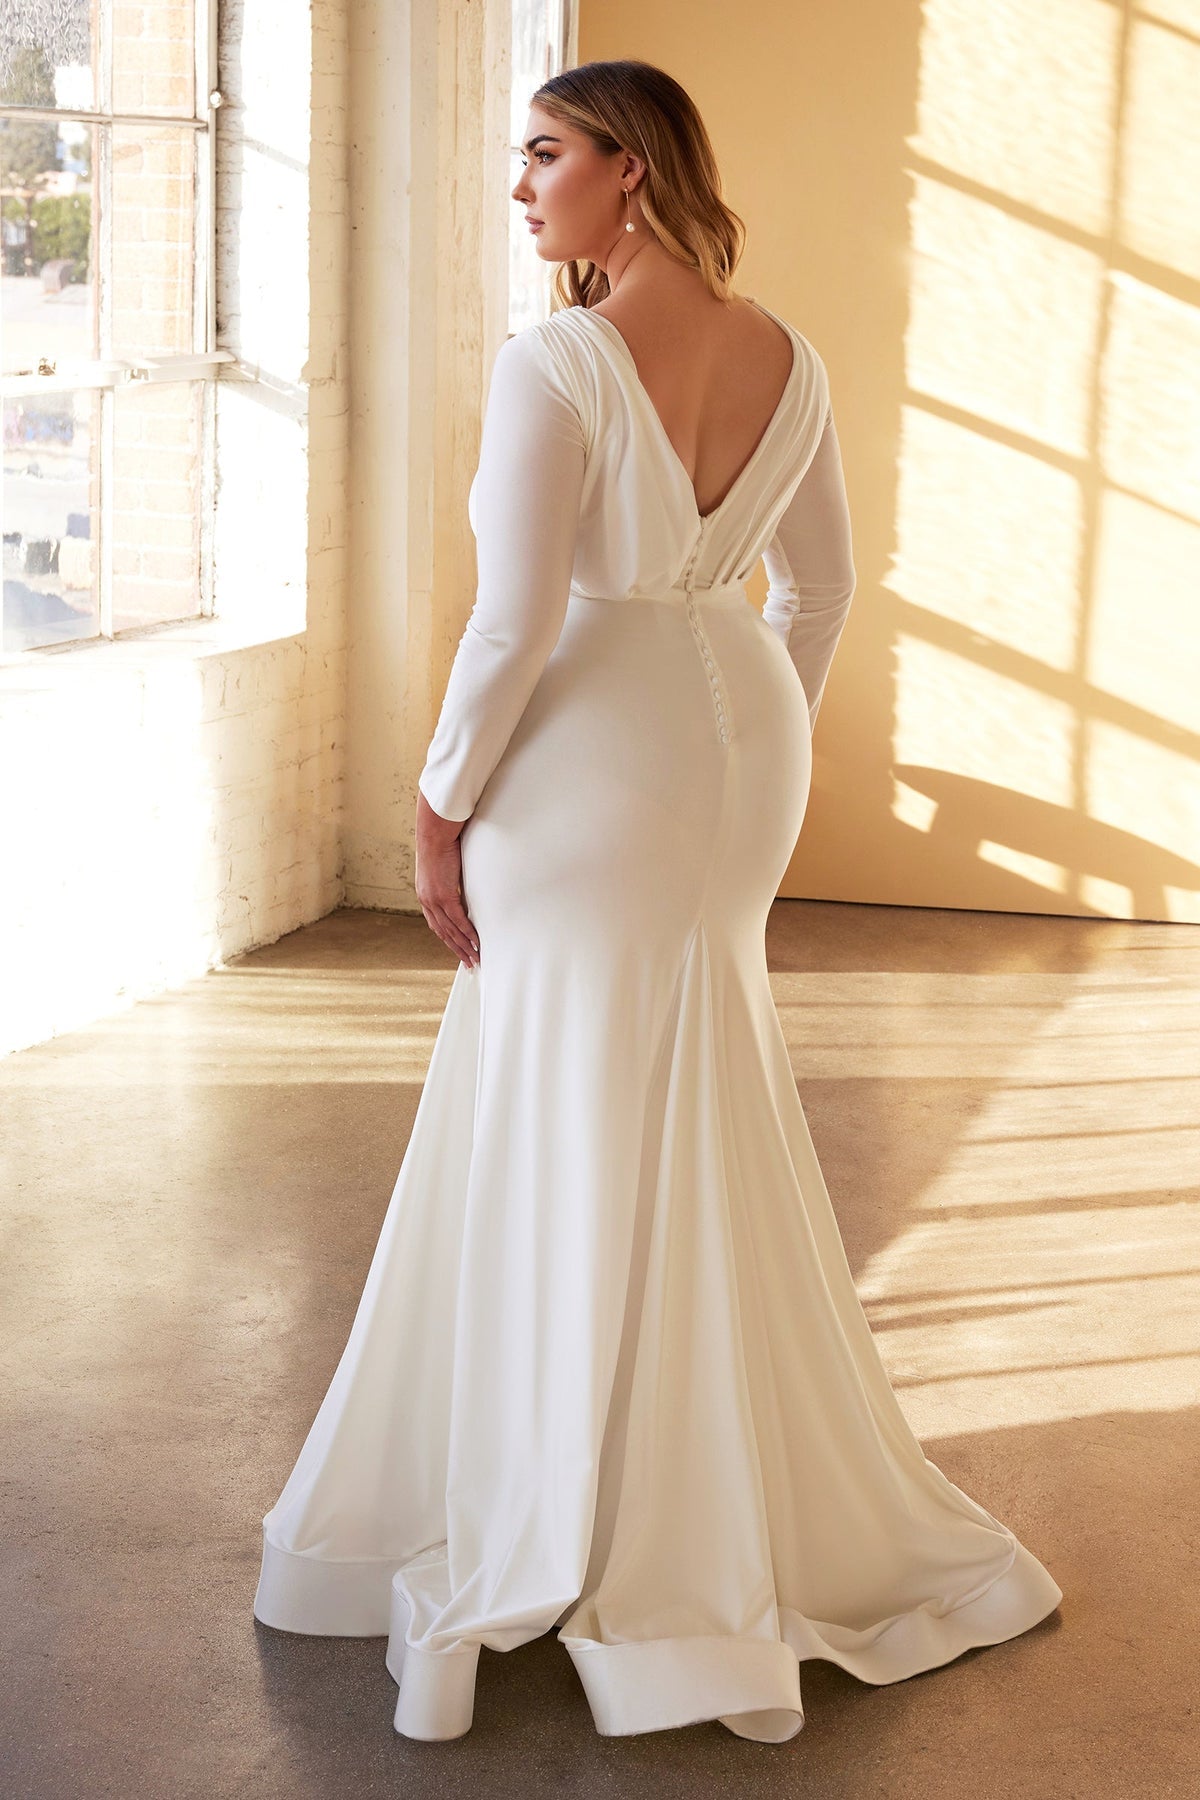 white long sleeve wedding dress plus size